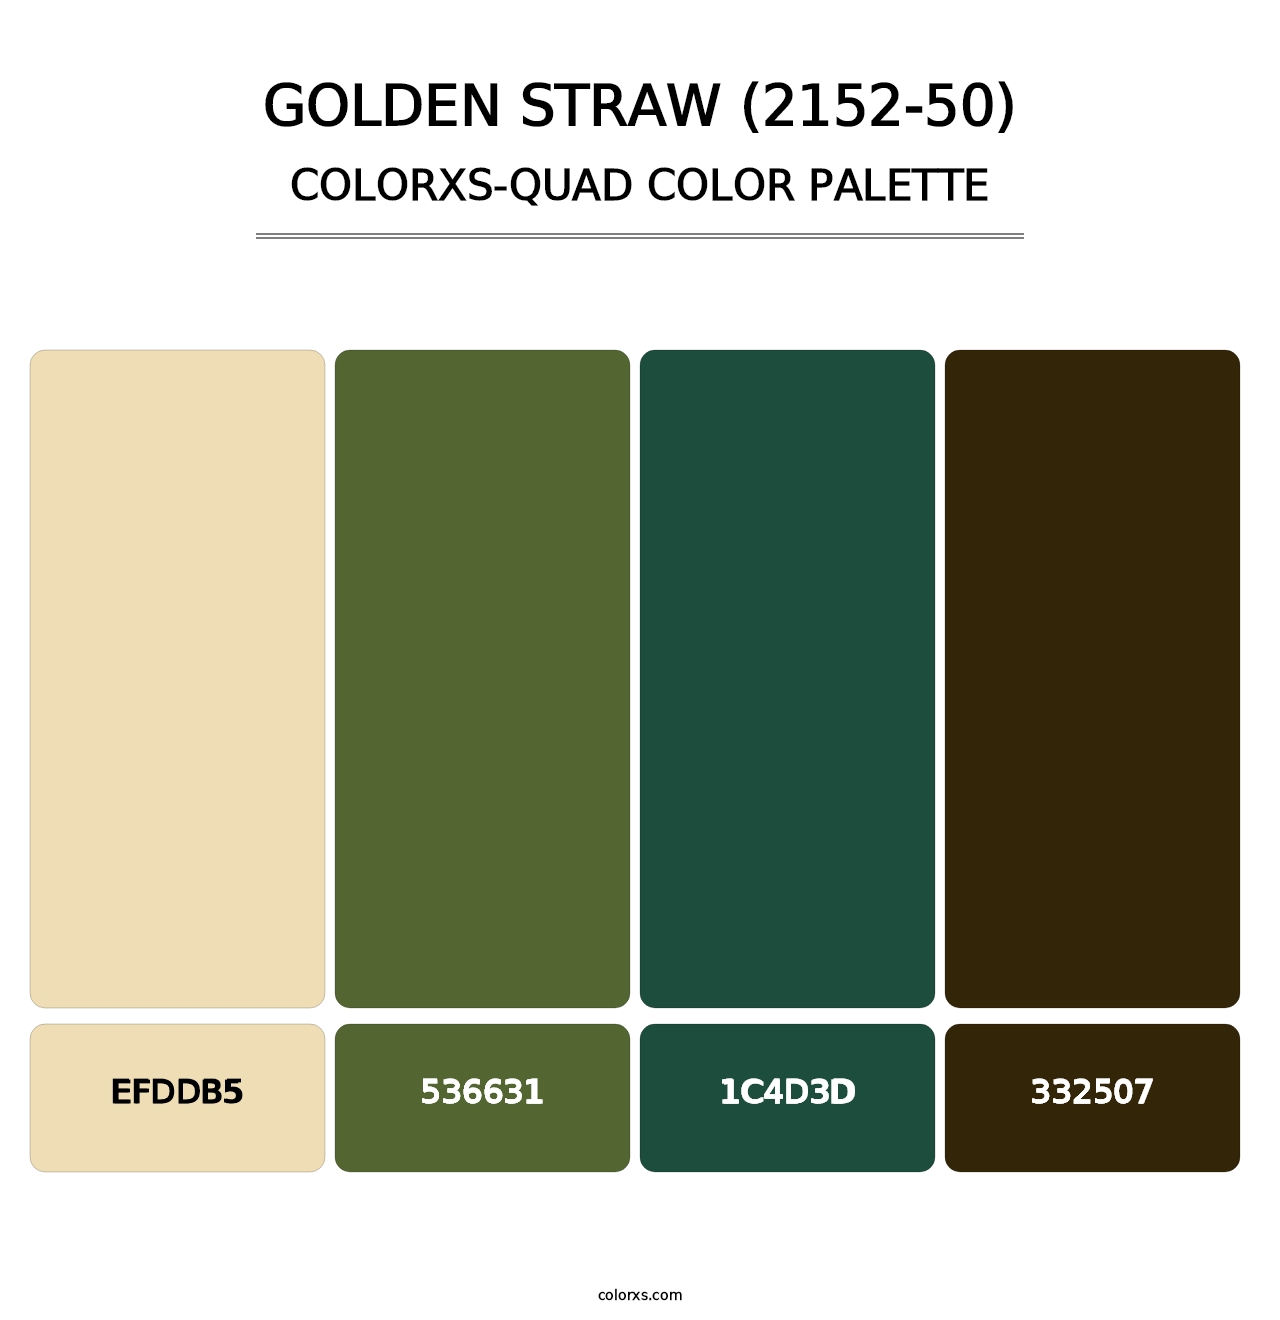 Golden Straw (2152-50) - Colorxs Quad Palette